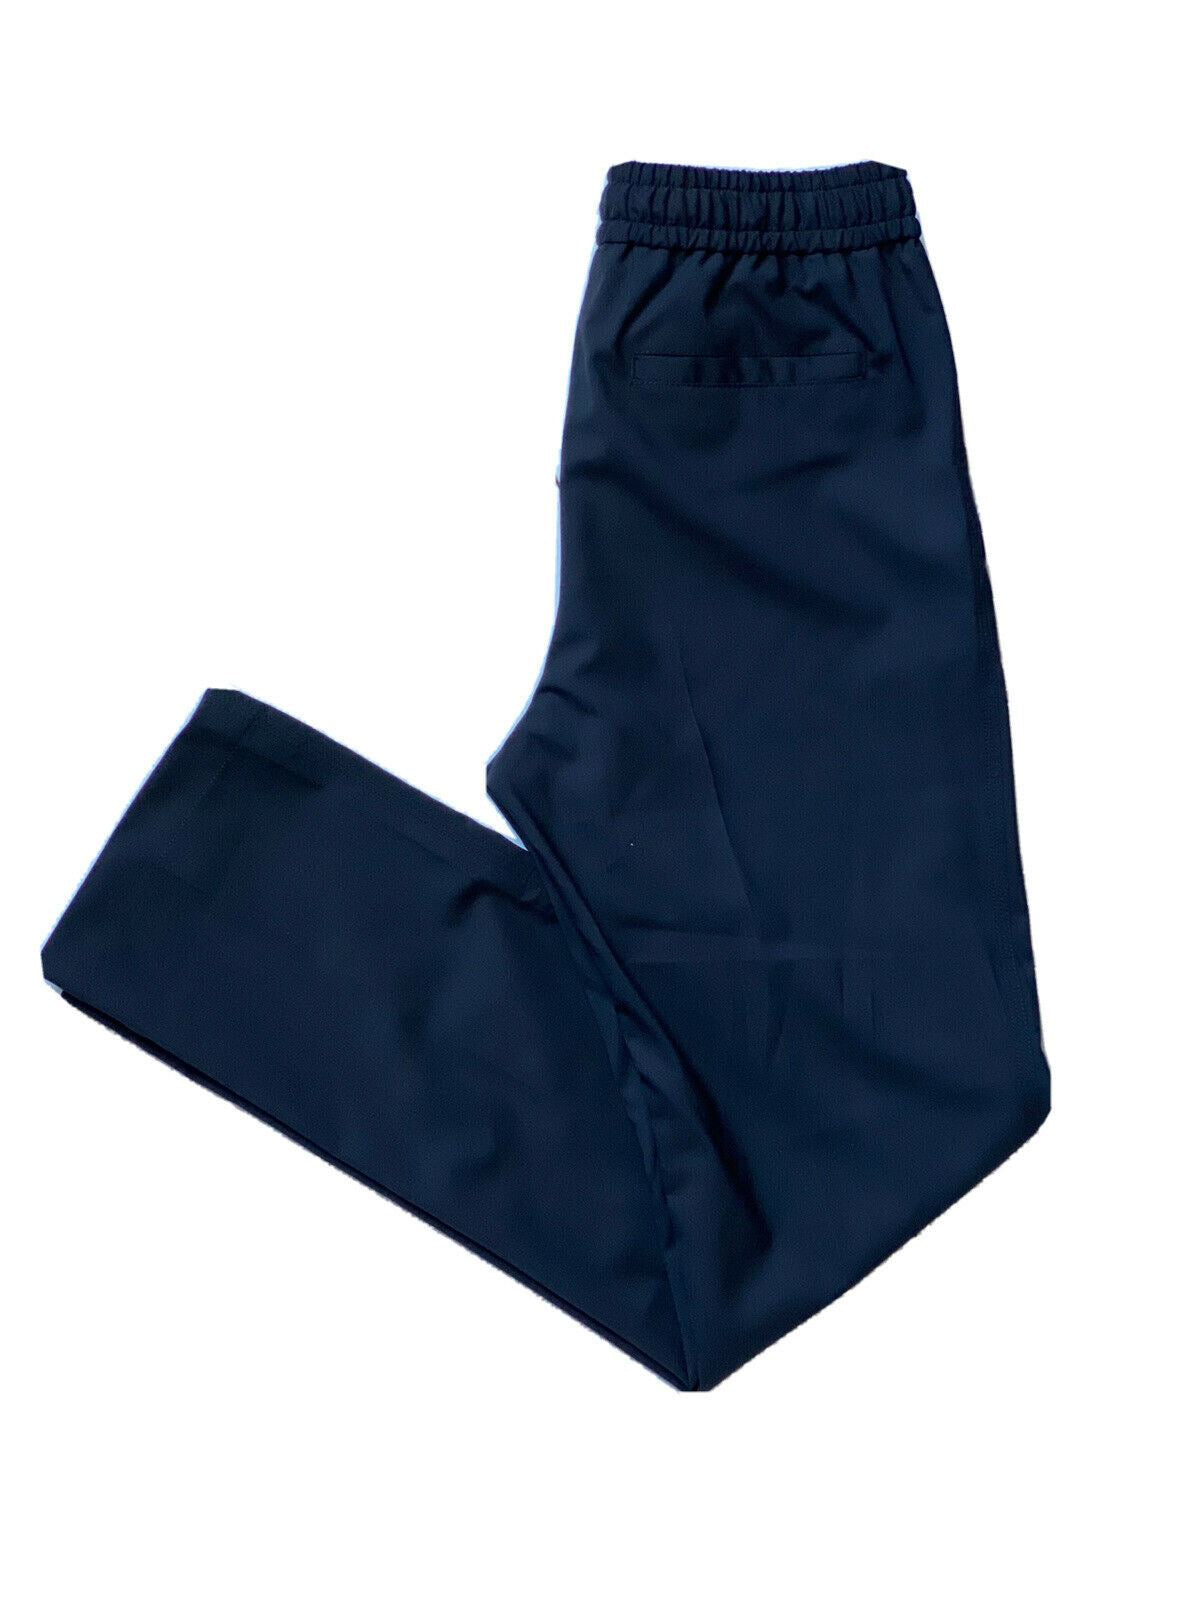 Мужские черные шерстяные брюки Versace NWT, 595 долларов США, размер 38, США (54 евро), производство Италия, A83072 